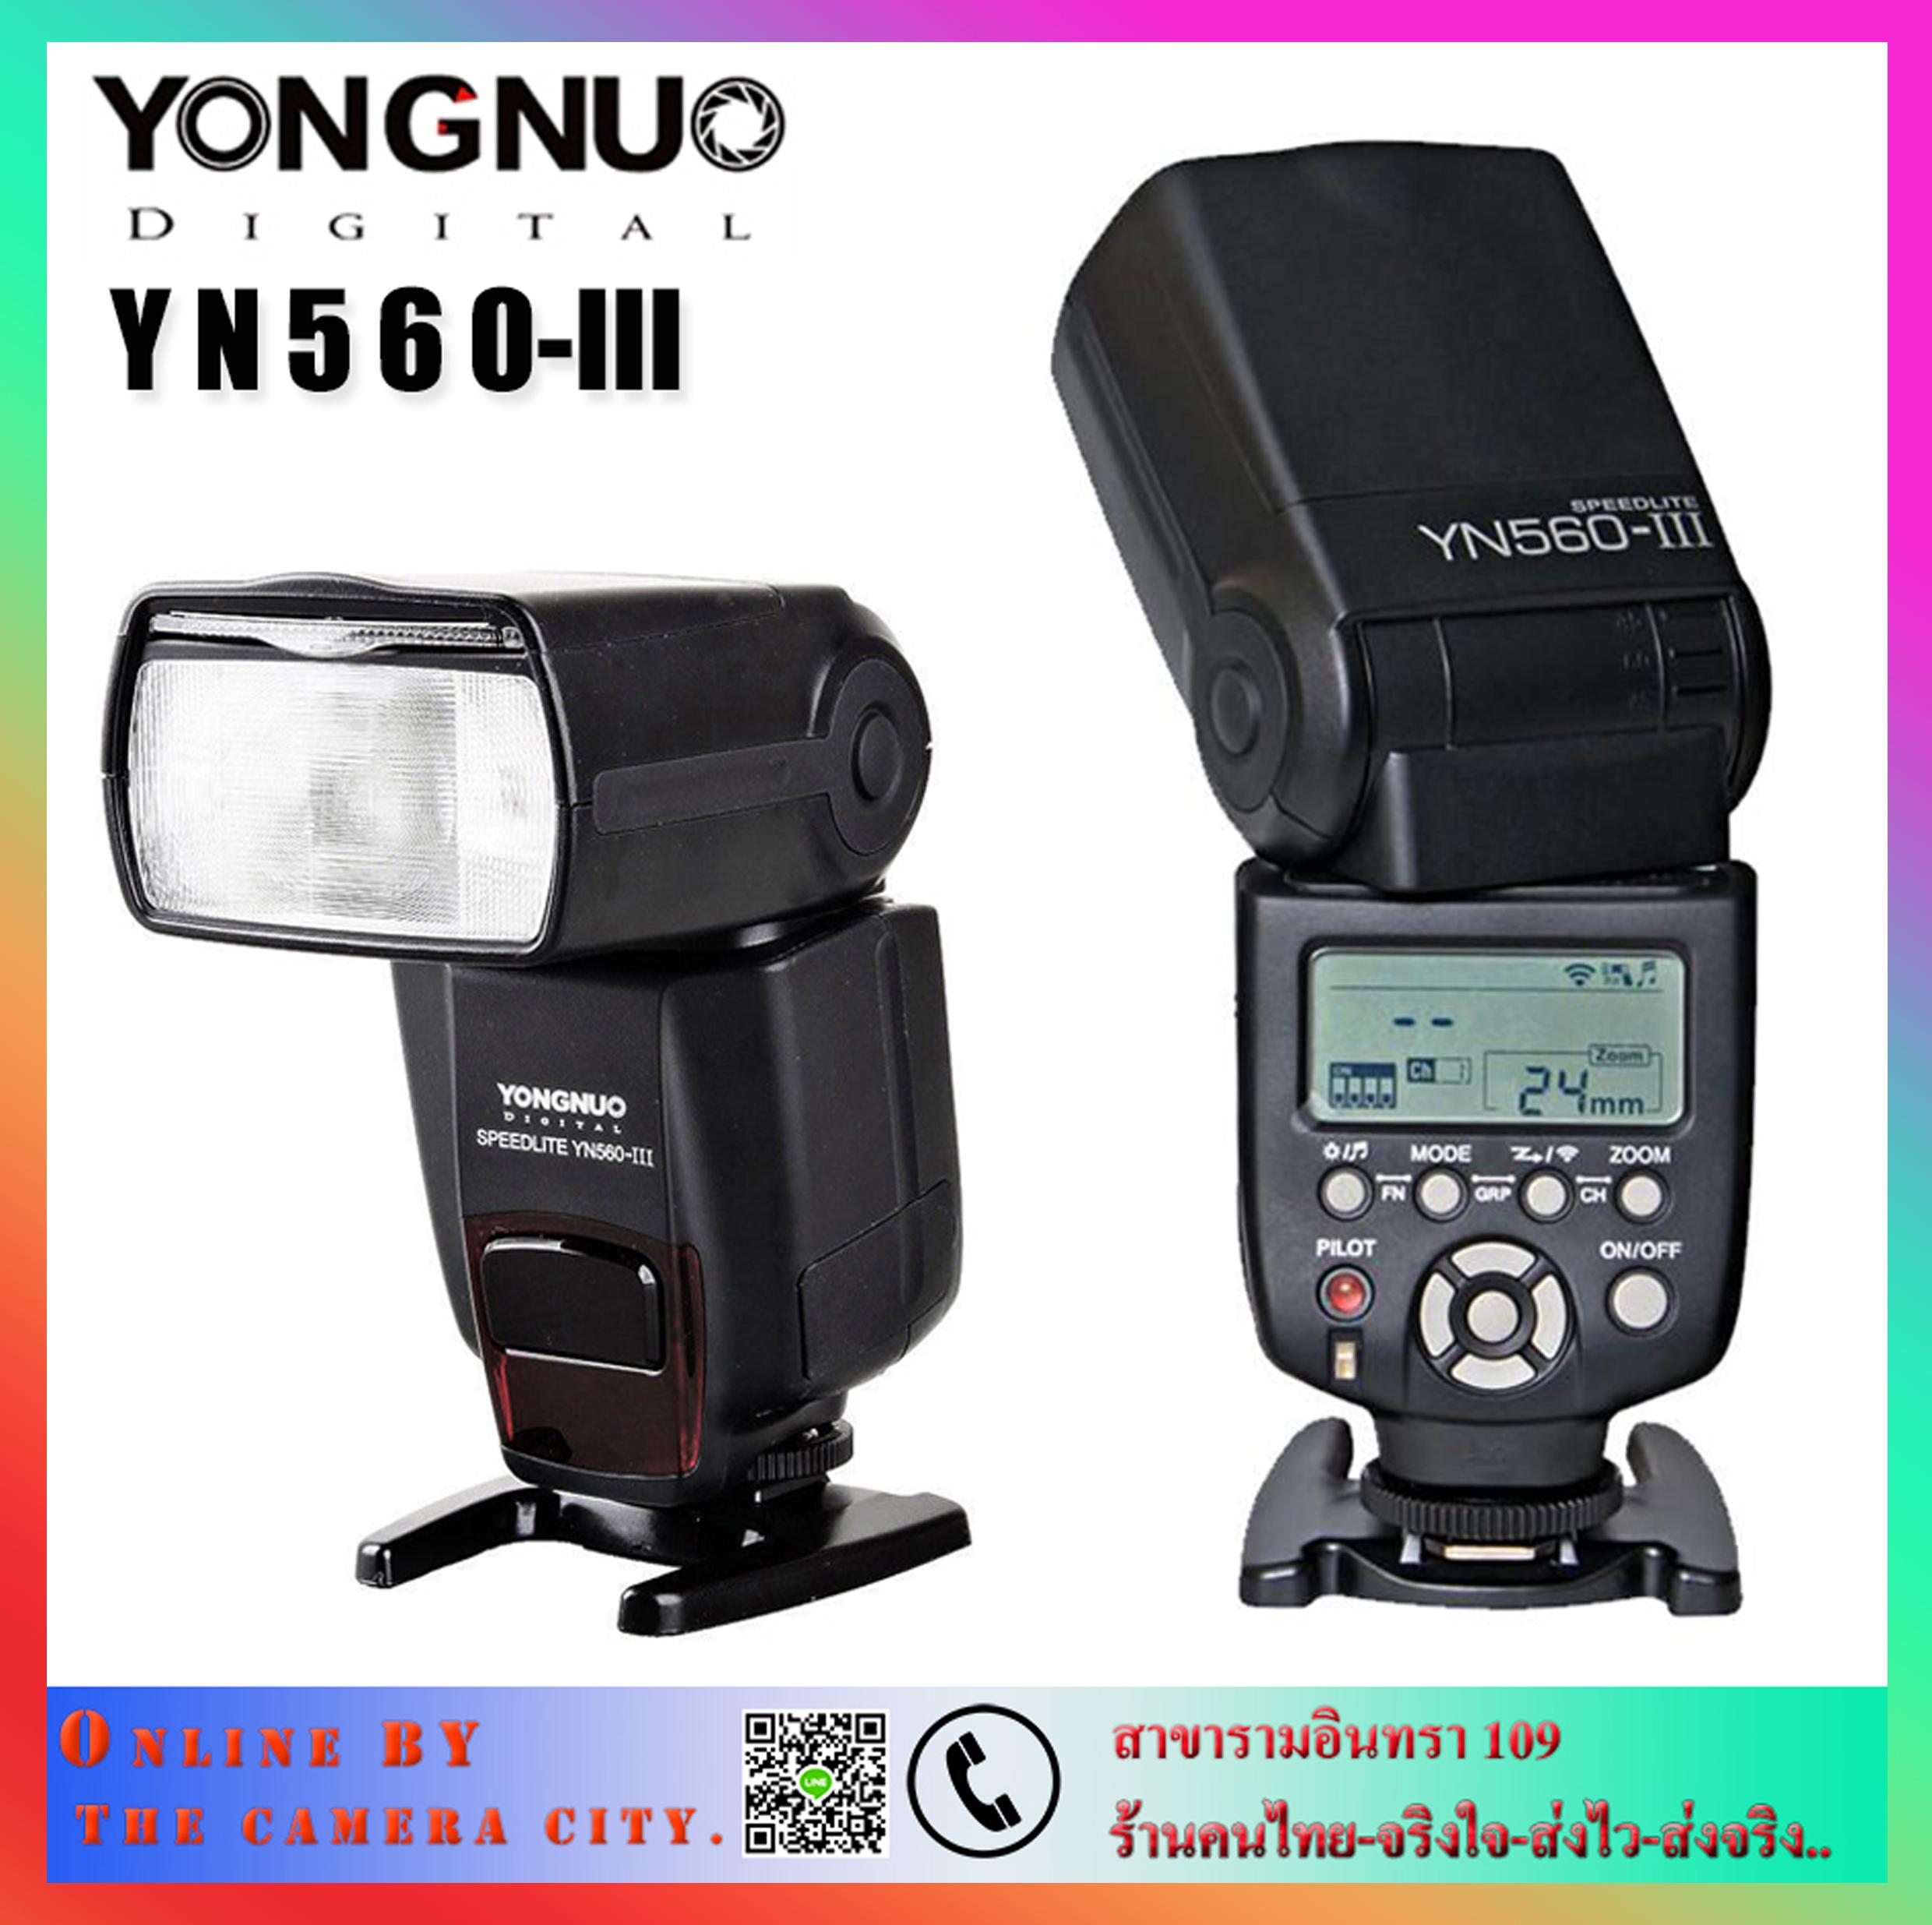 Yongnuo YN560 III Flash Manuel For DSLR